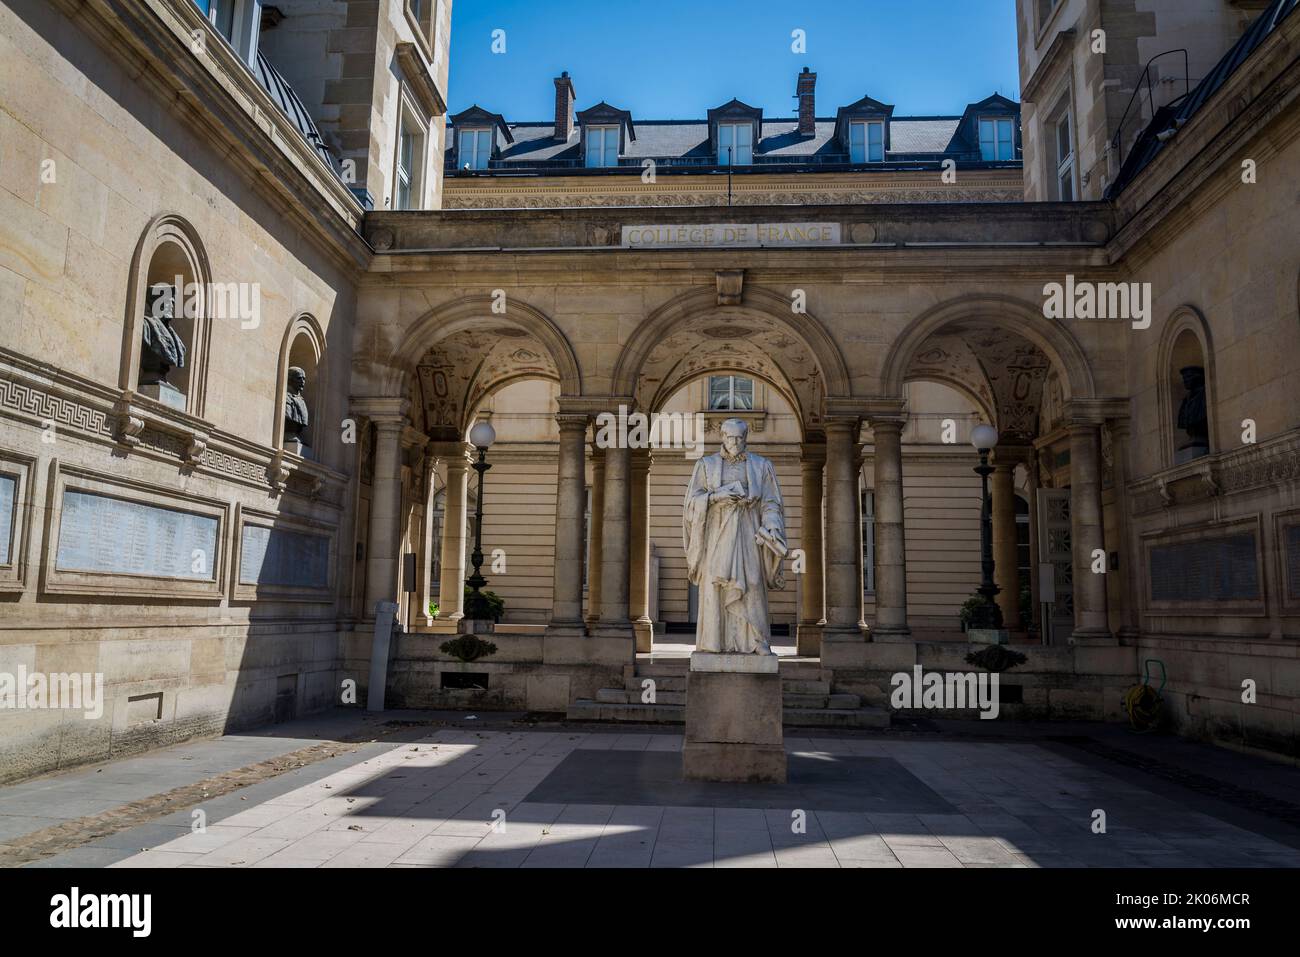 G. Bude statua al Collège de France, fondata nel 1530 da Francesco i, è un istituto di istruzione superiore e di ricerca, quartiere latino, 5th arrondis Foto Stock